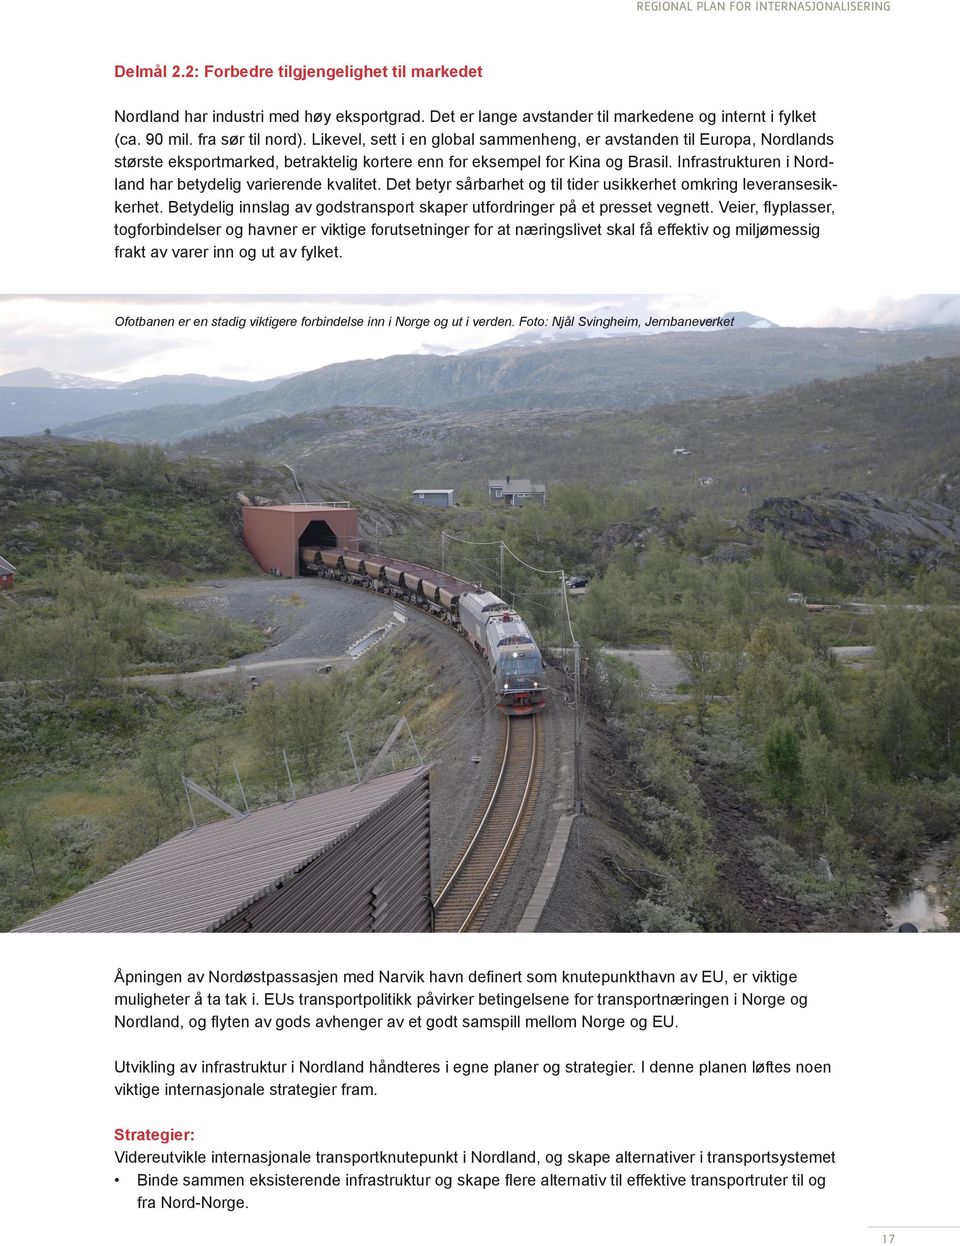 Infrastrukturen i Nordland har betydelig varierende kvalitet. Det betyr sårbarhet og til tider usikkerhet omkring leveransesikkerhet.